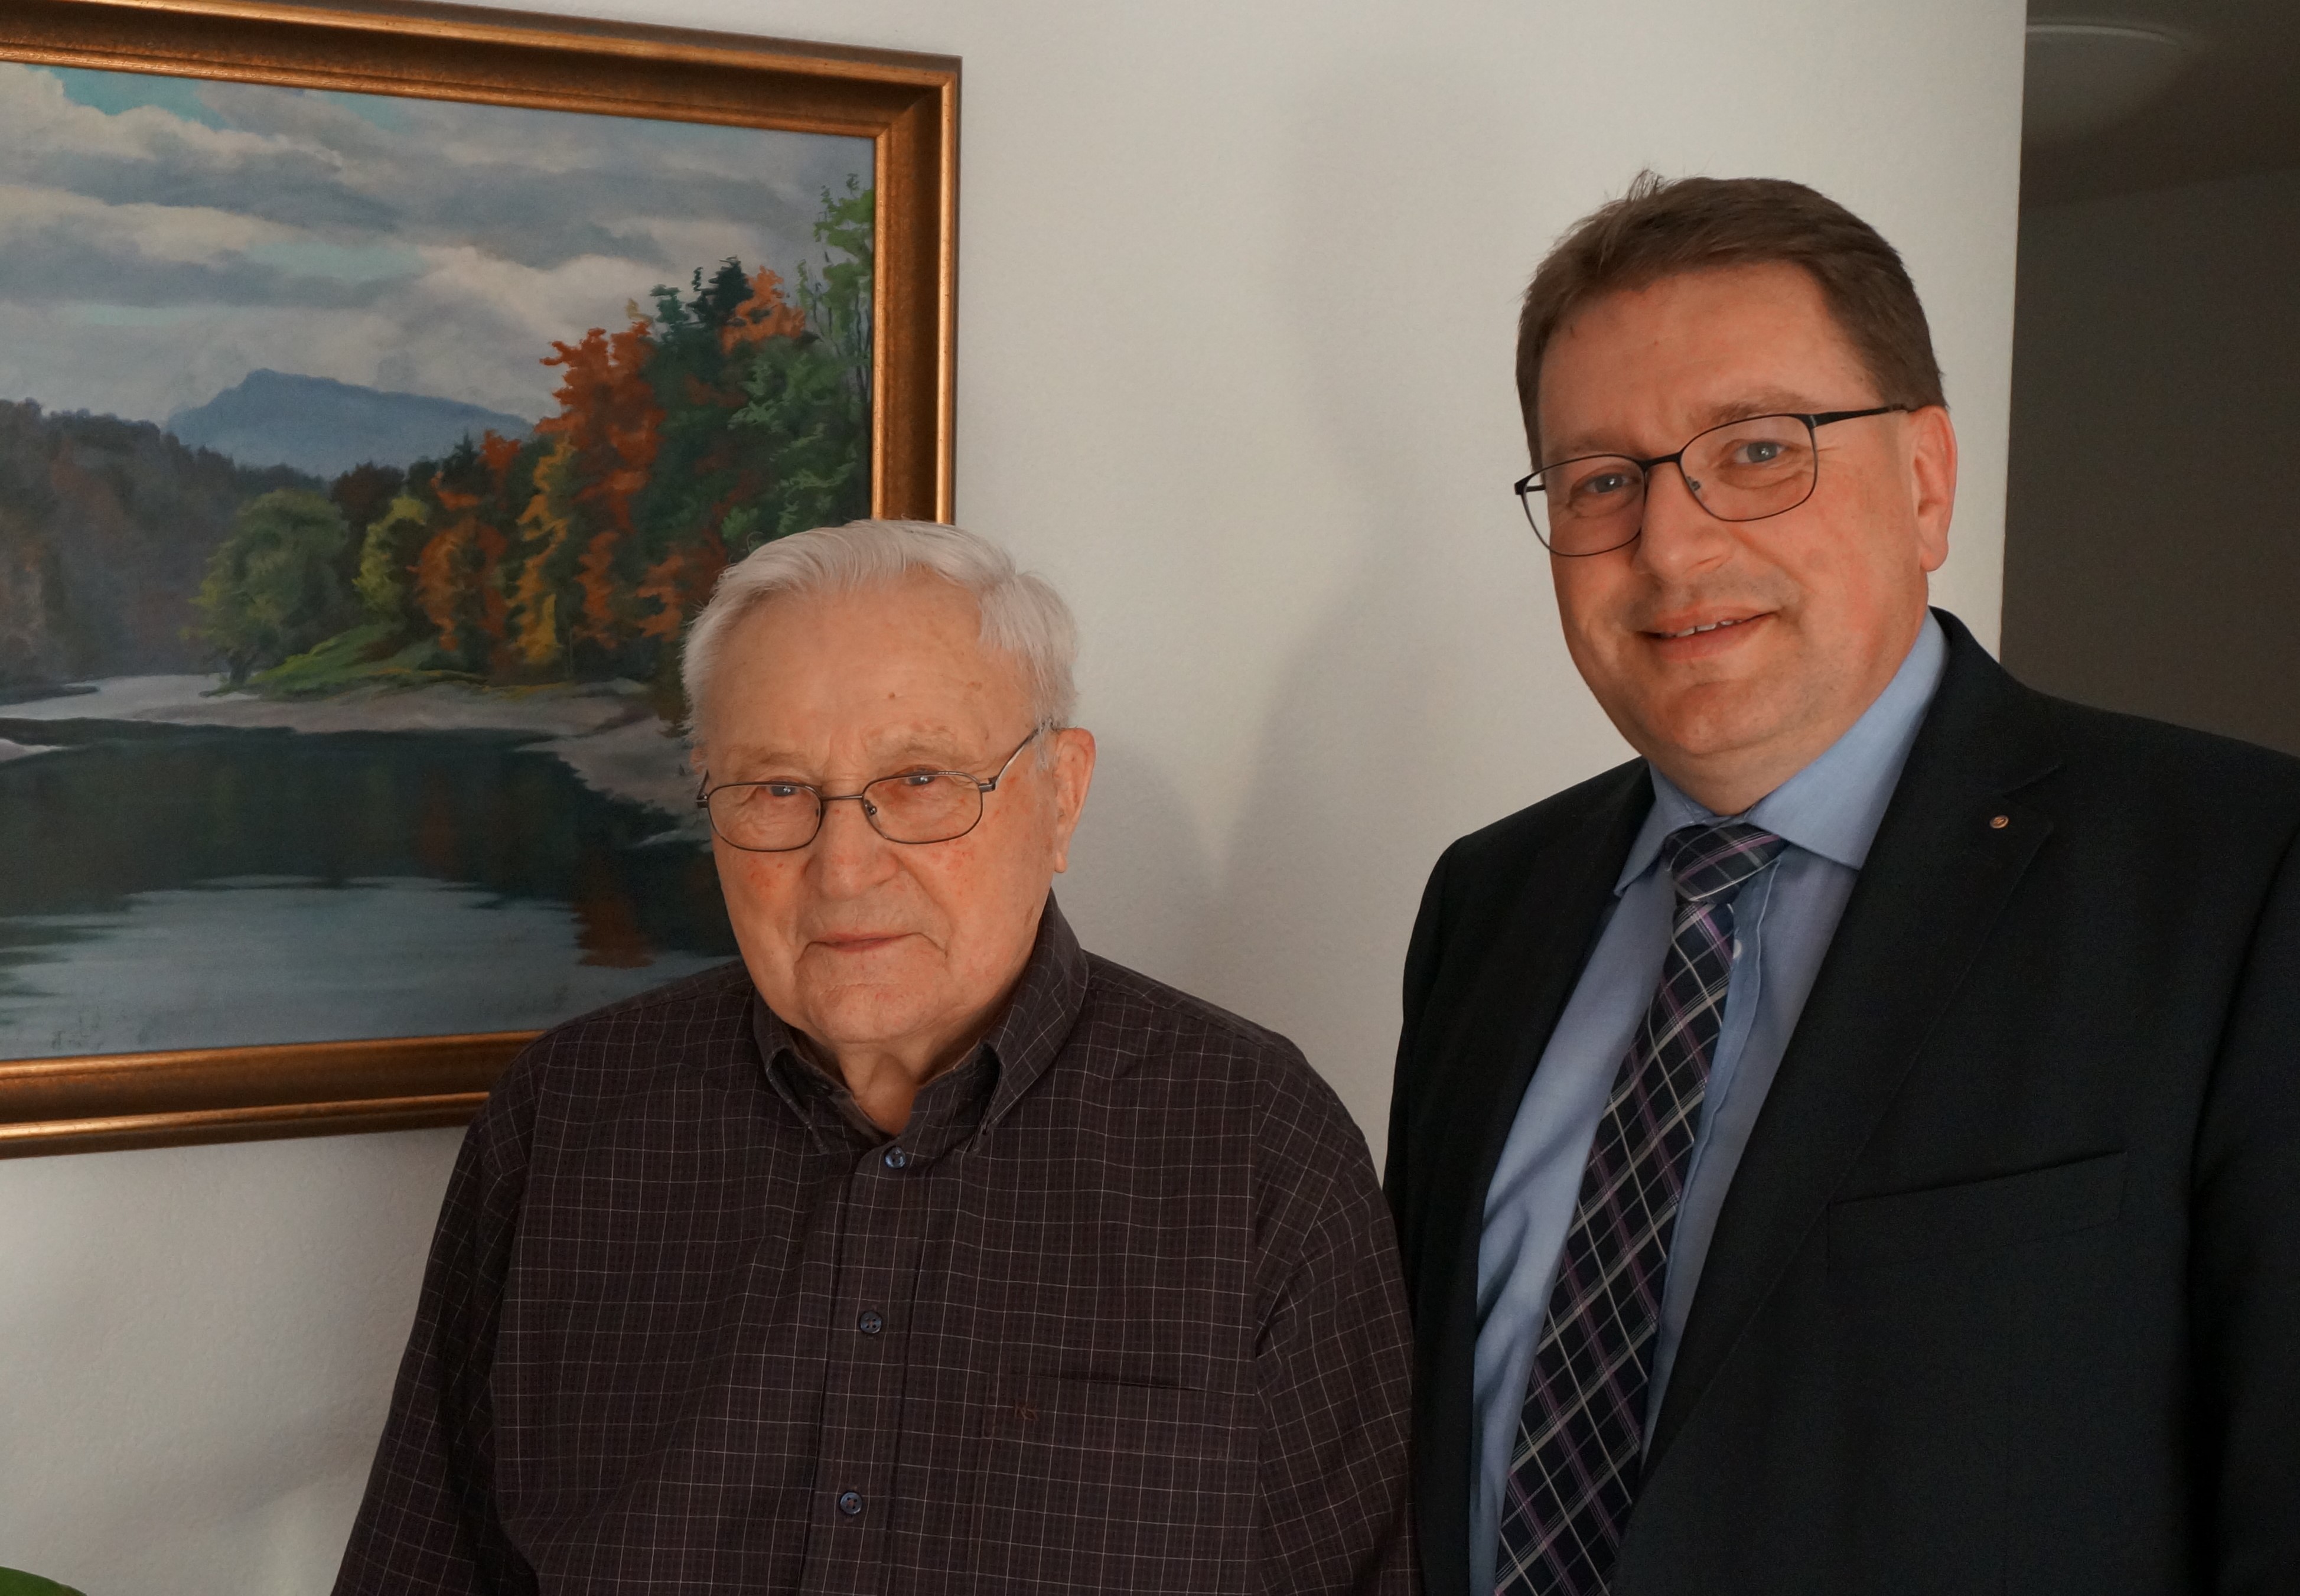 Am Dienstag, 21. Januar 2020, durfte Herr Walter Reist seinen 90. Geburtstag feiern.
Die Gemeindebehörden gratulieren herzlich dazu!